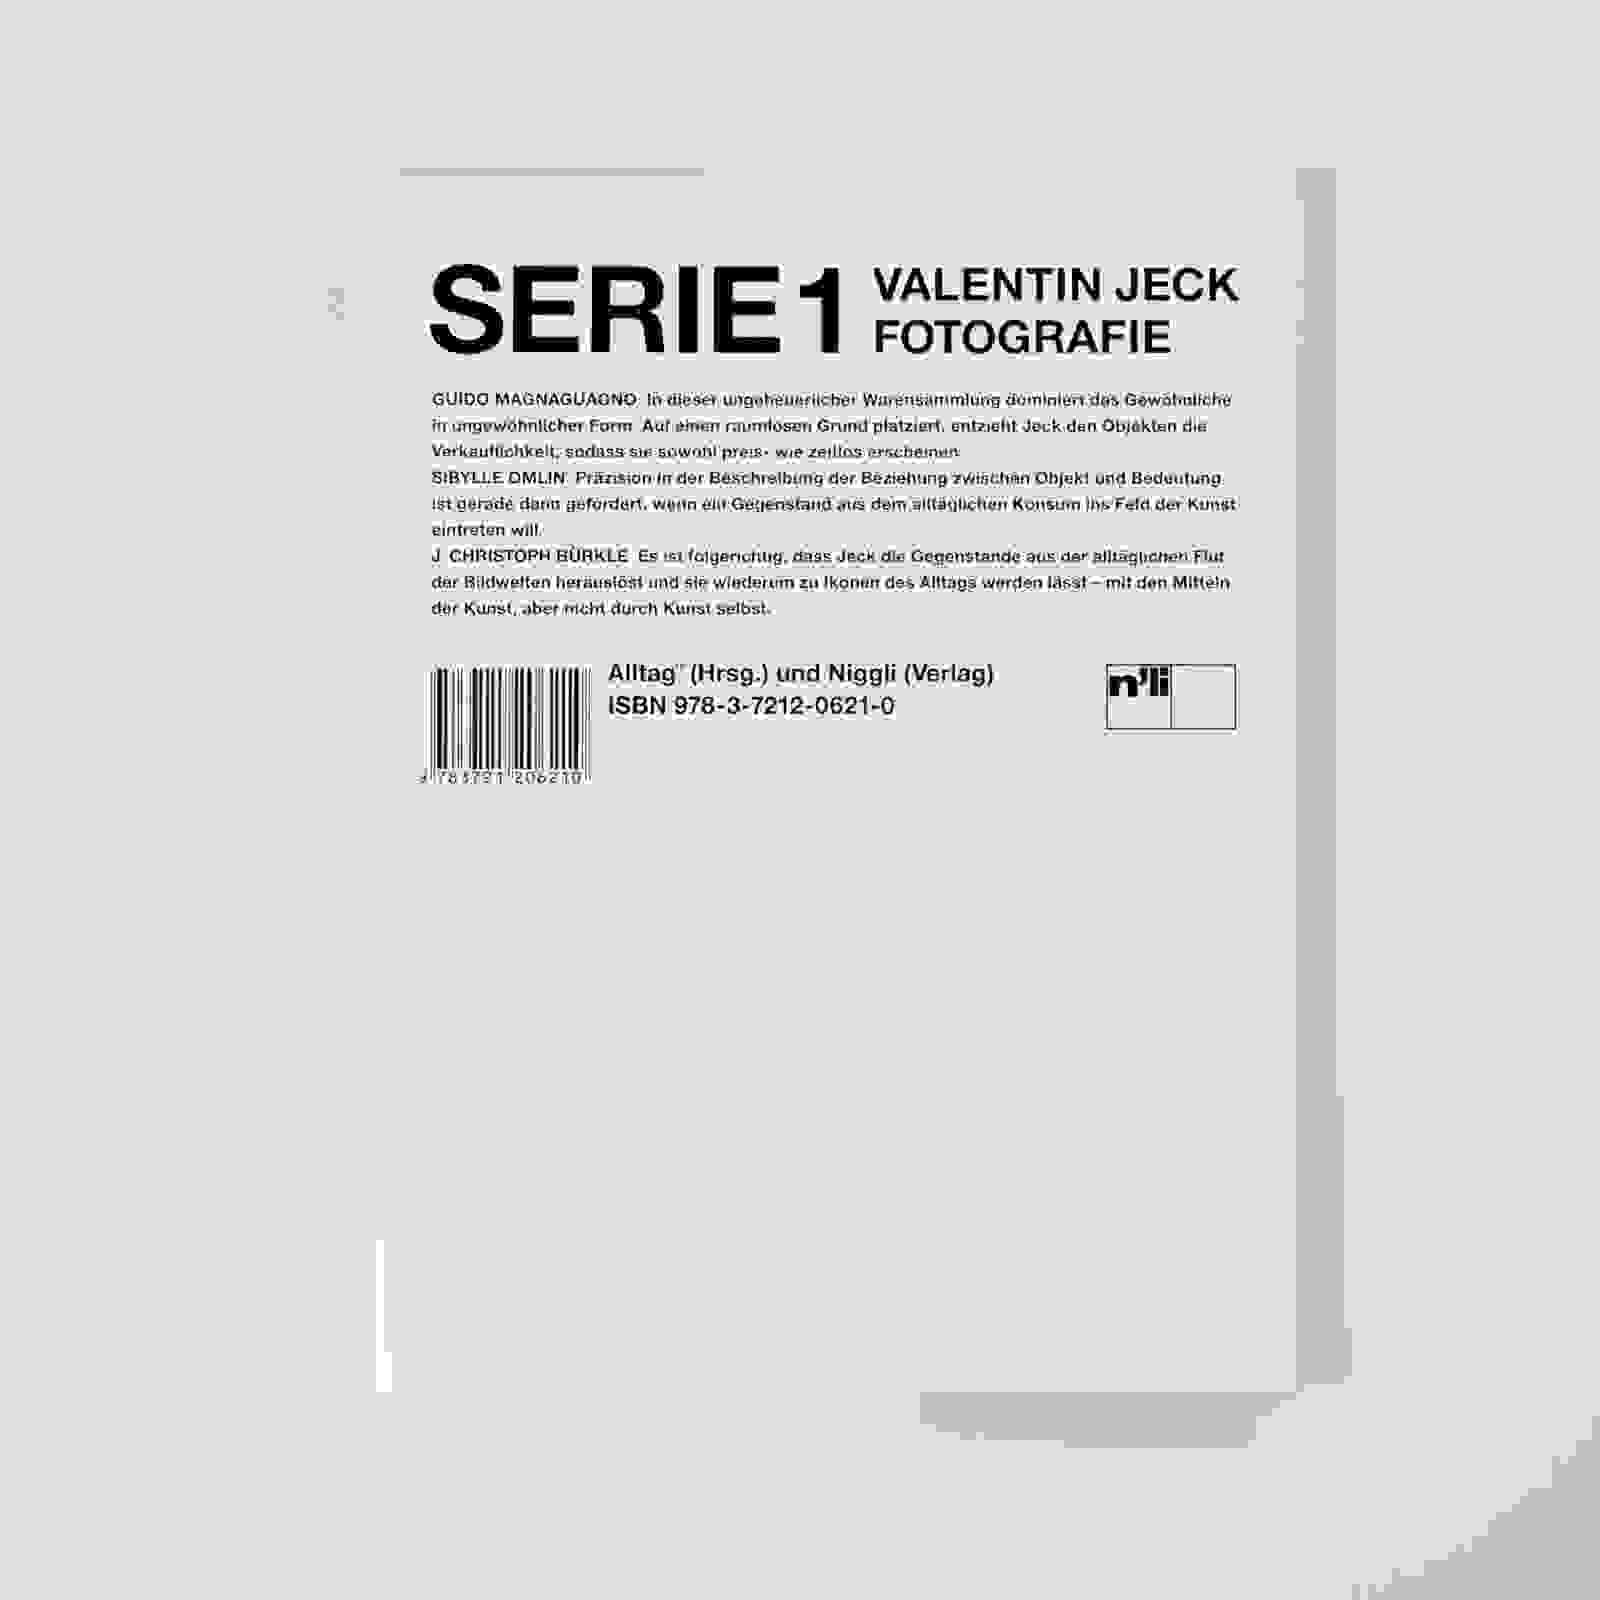 Buchgestaltung «Serie 1» Valentin Jeck